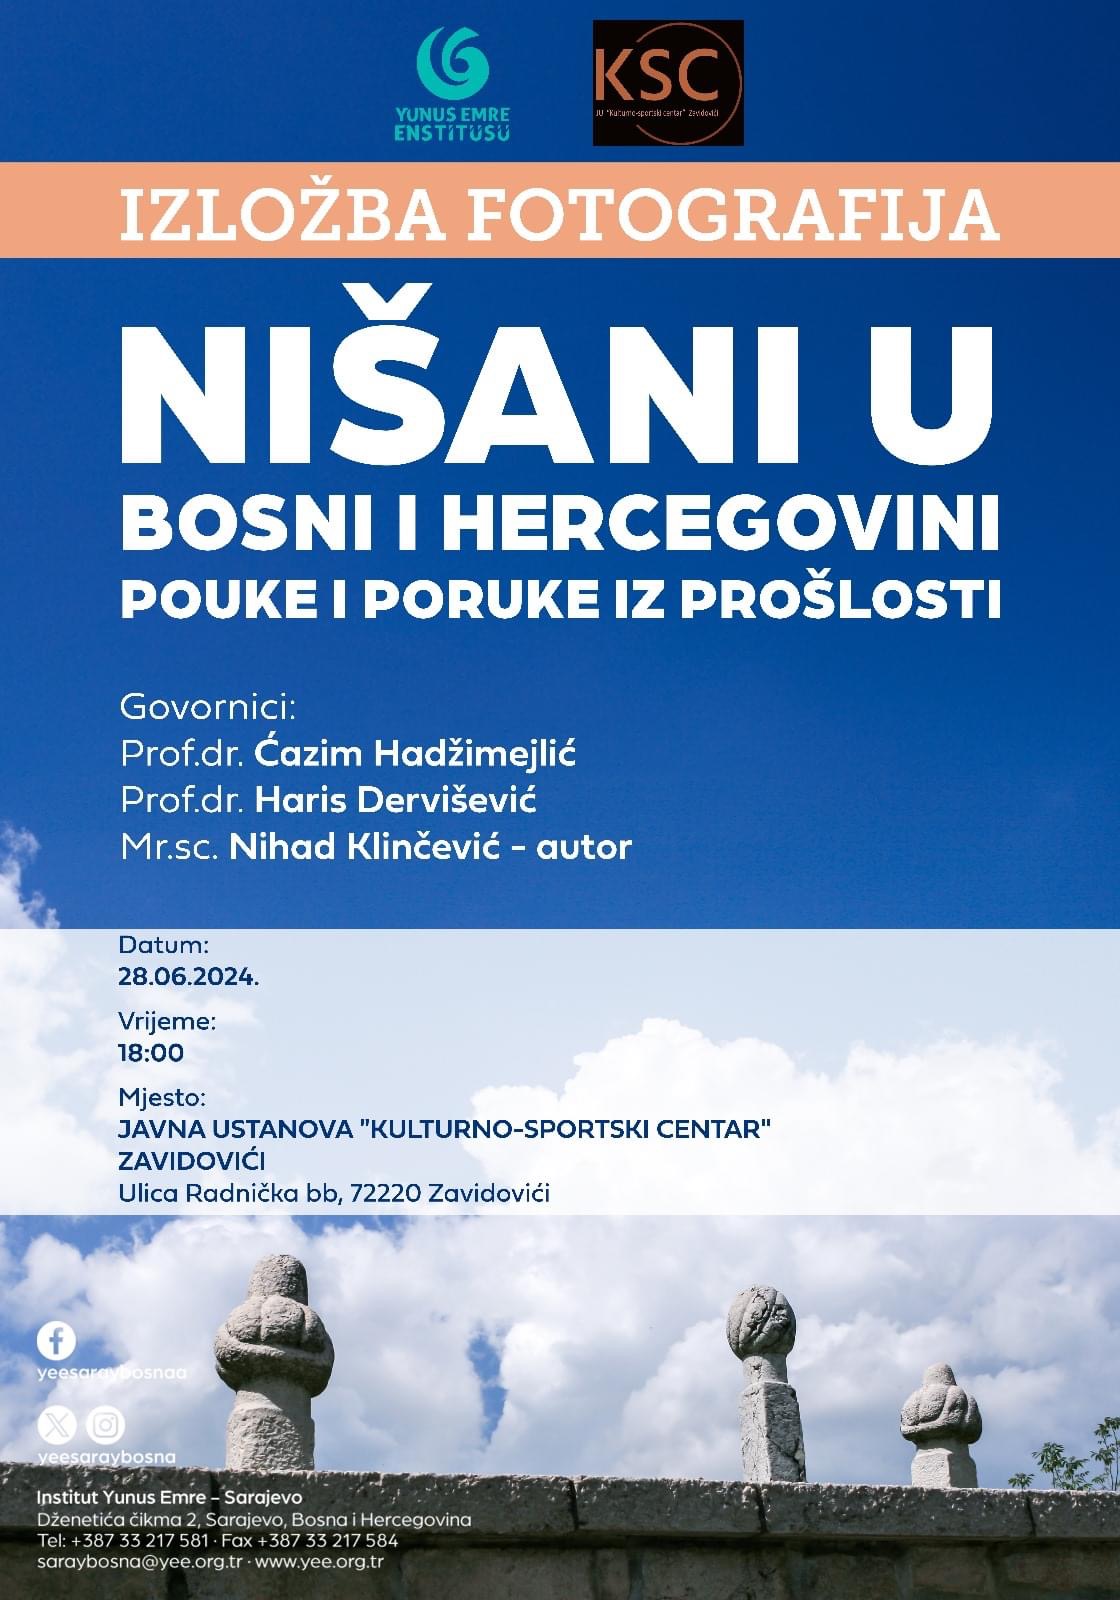 Izložba fotografija pod nazivom “Nišani u Bosni i Hercegovini” u holu Kulturno-sportskog centra